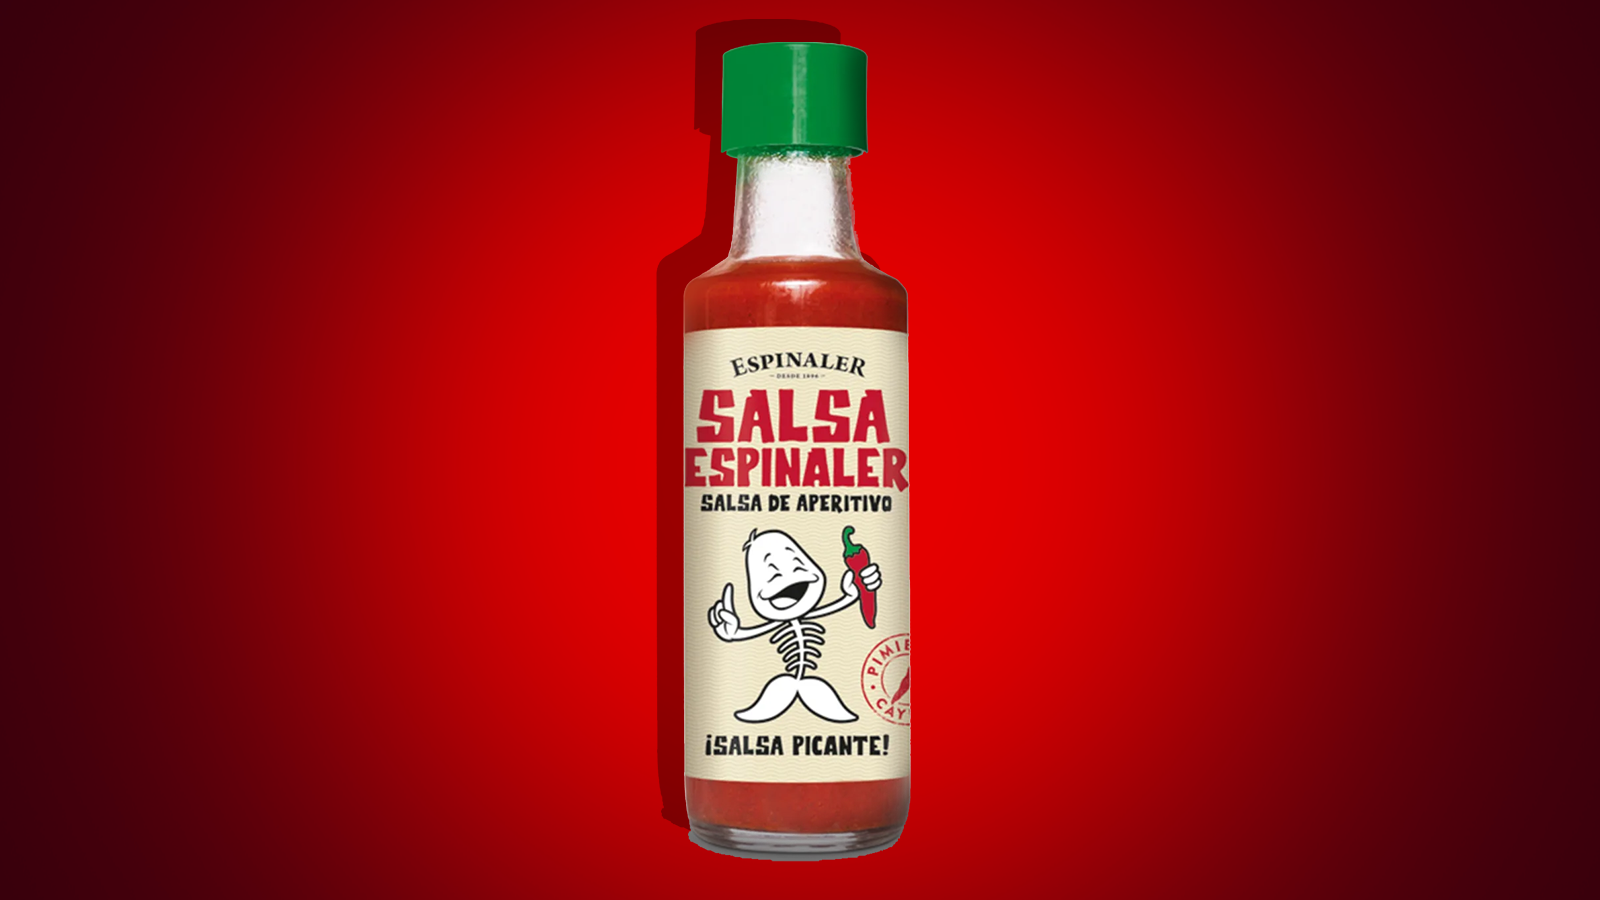 A bottle of Salsa Espinaler